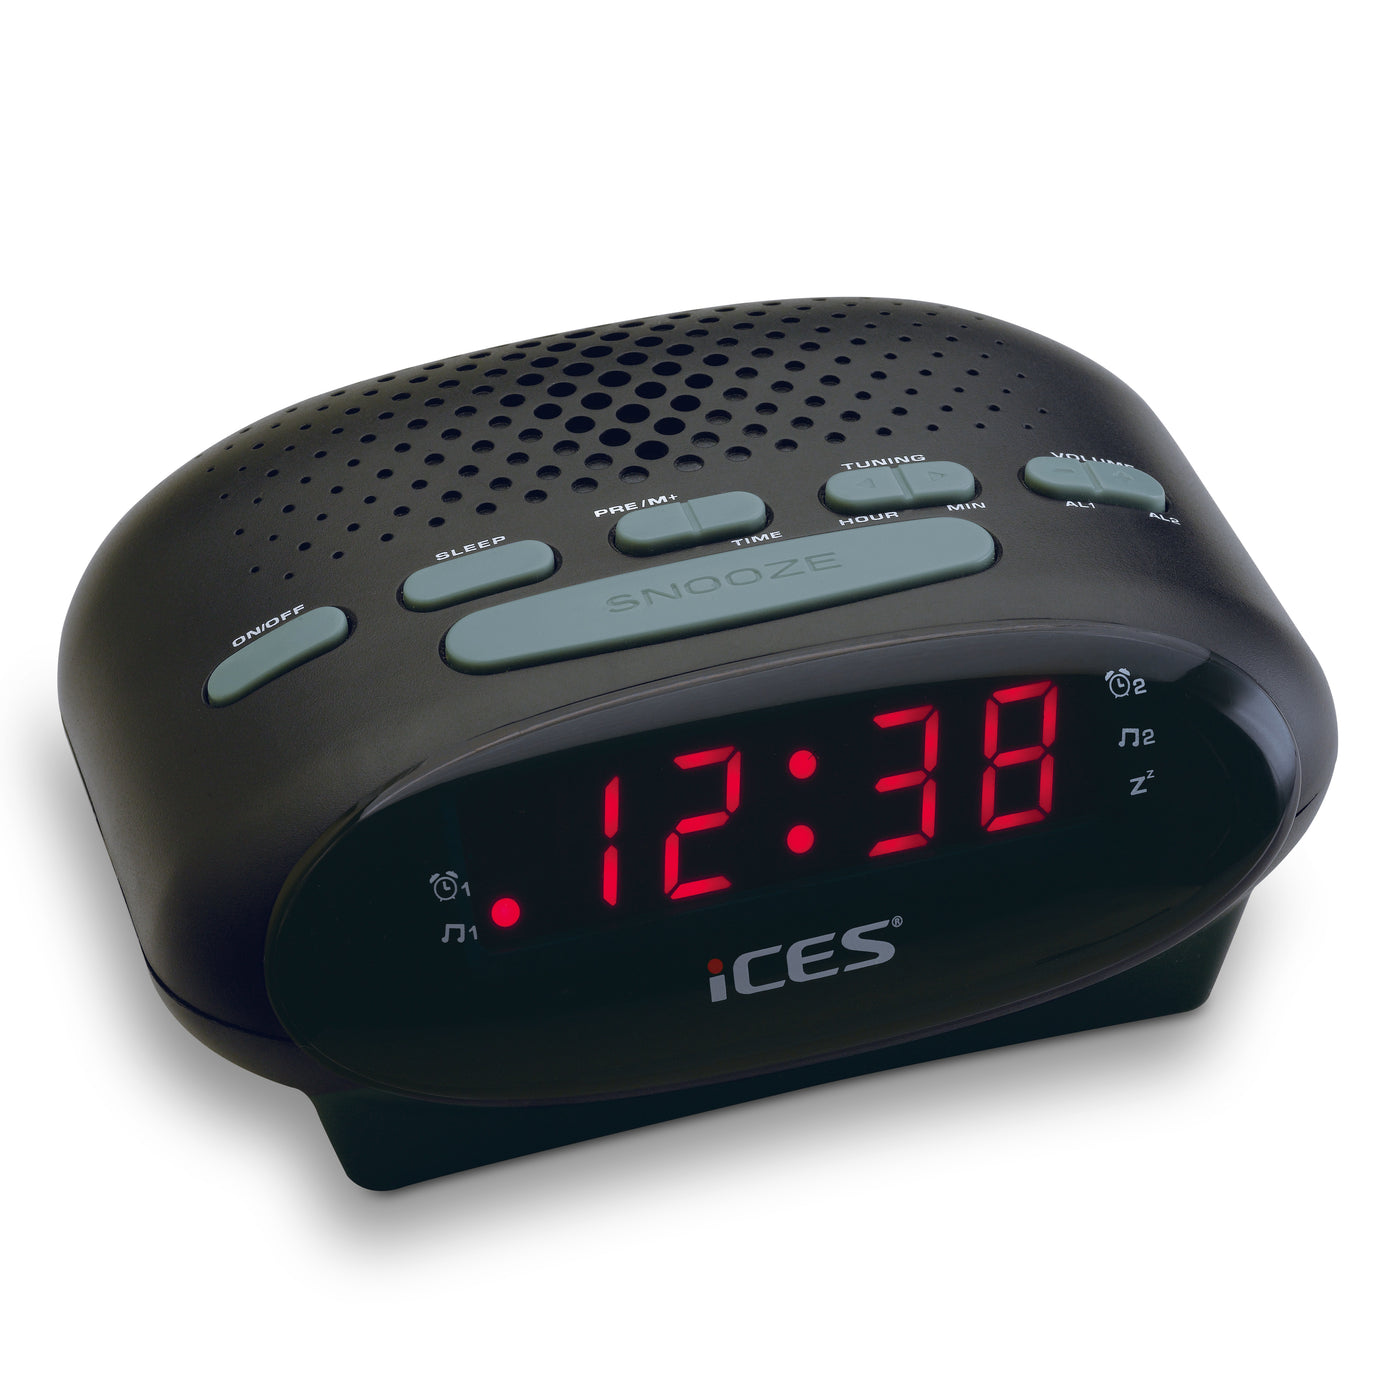 Ices ICR-210 Black - FM Clock radio, black